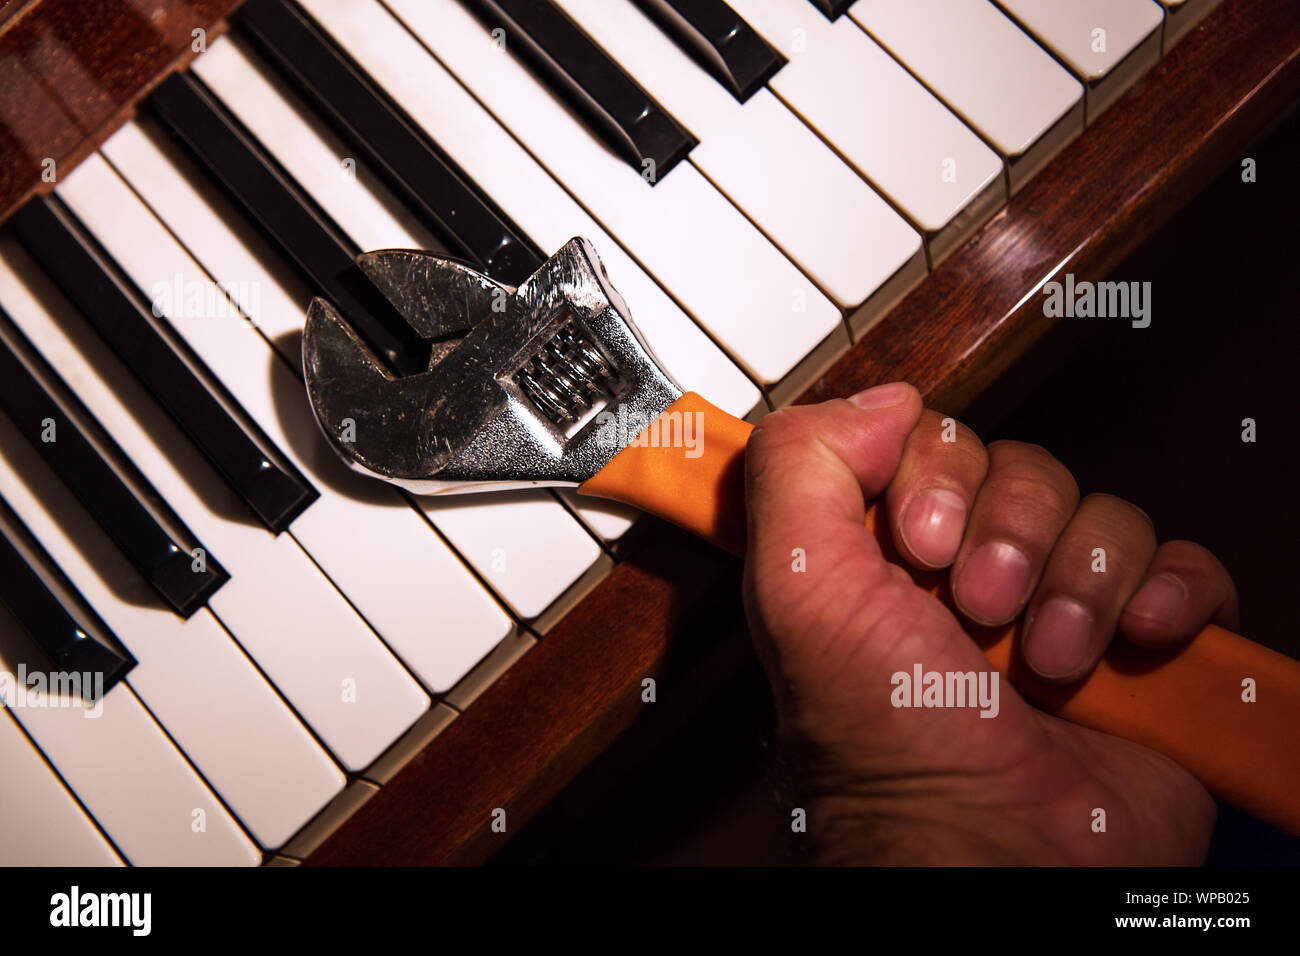 Nahaufnahme, Ansicht von oben auf die Hand eines Mannes Holding einen verstellbaren Schraubenschlüssel, einer der Schlüssel eines klassischen Piano Holding. Die Misshandlung von Musikinstrumenten. Stockfoto